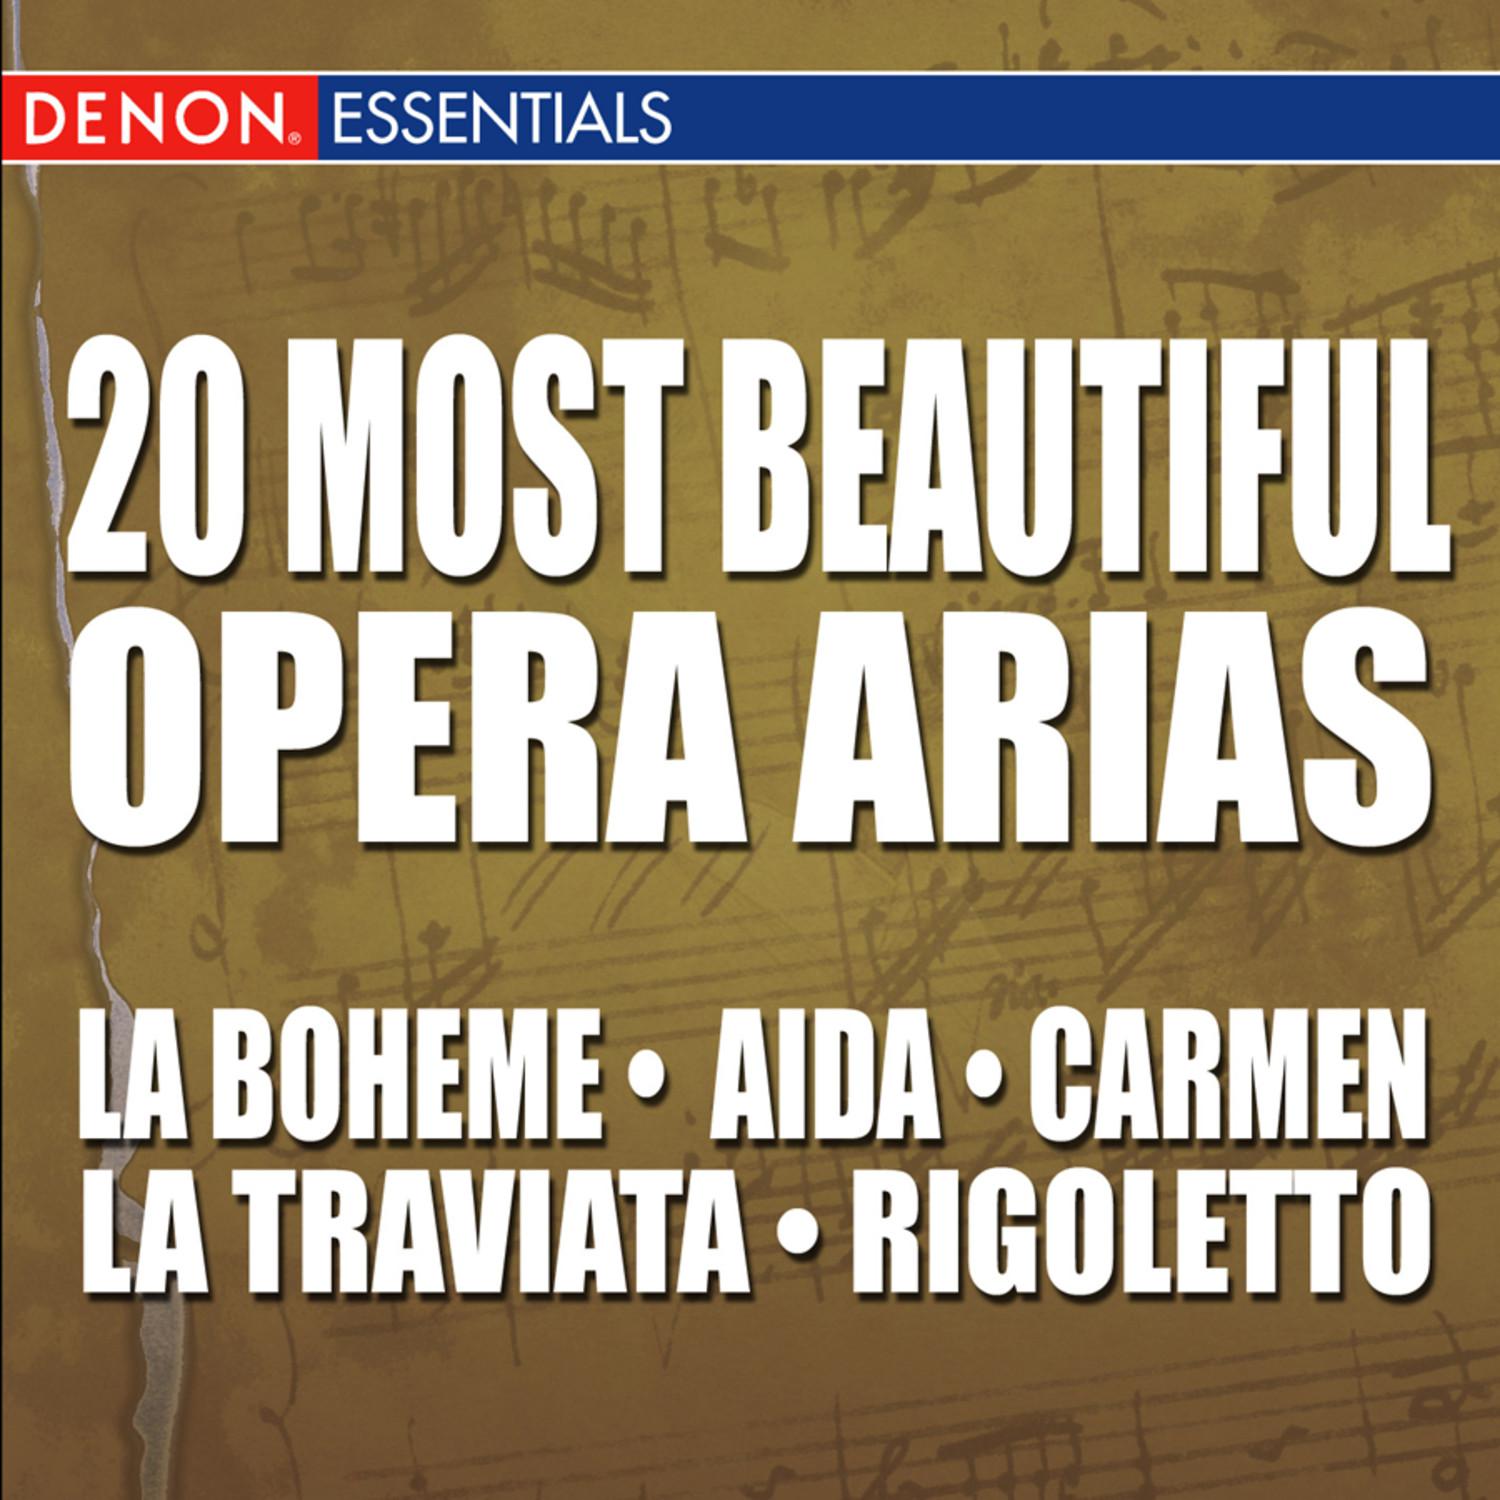 La Traviata: Act 1: Alfredo - Violetta - Coro: "Libiamo"